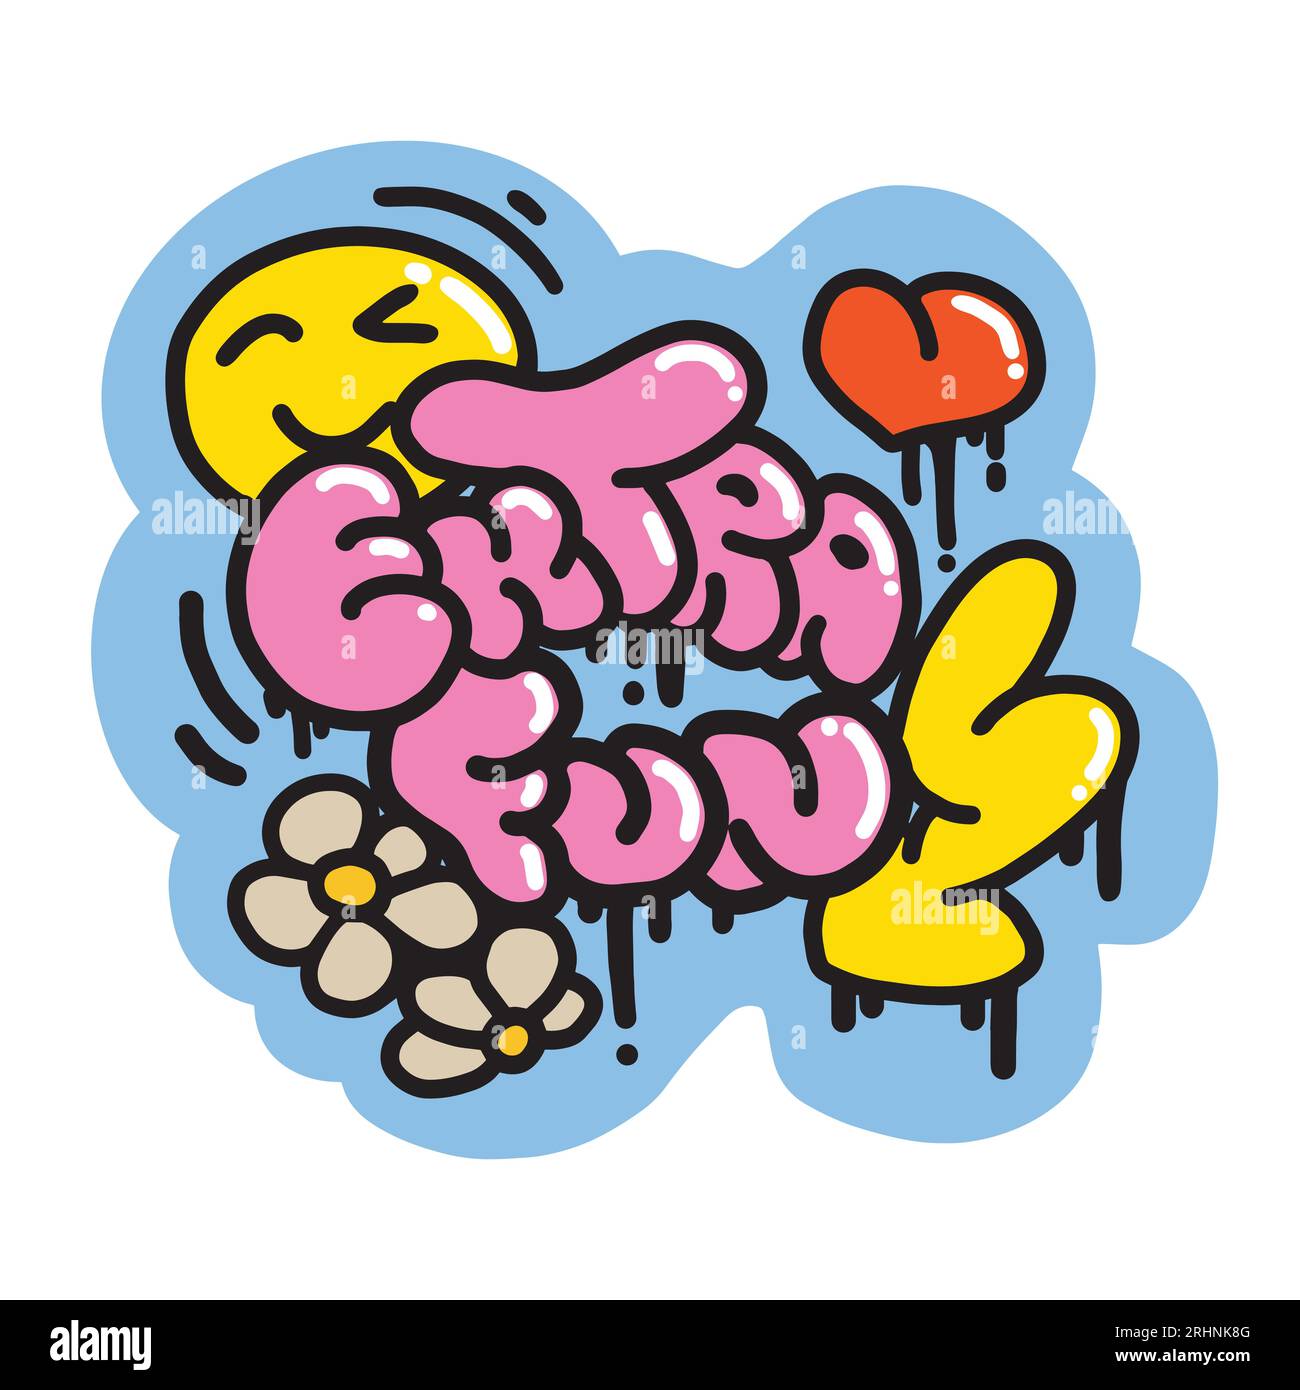 Slogan Graffiti Extra Fun avec Cartoon Heart, Lightning, Marguerite, sourire. Lettrage coloré de style urbain. Illustration vectorielle. Autocollant hippie pour T-shirts, papier peint, téléphone de cas. Illustration de Vecteur